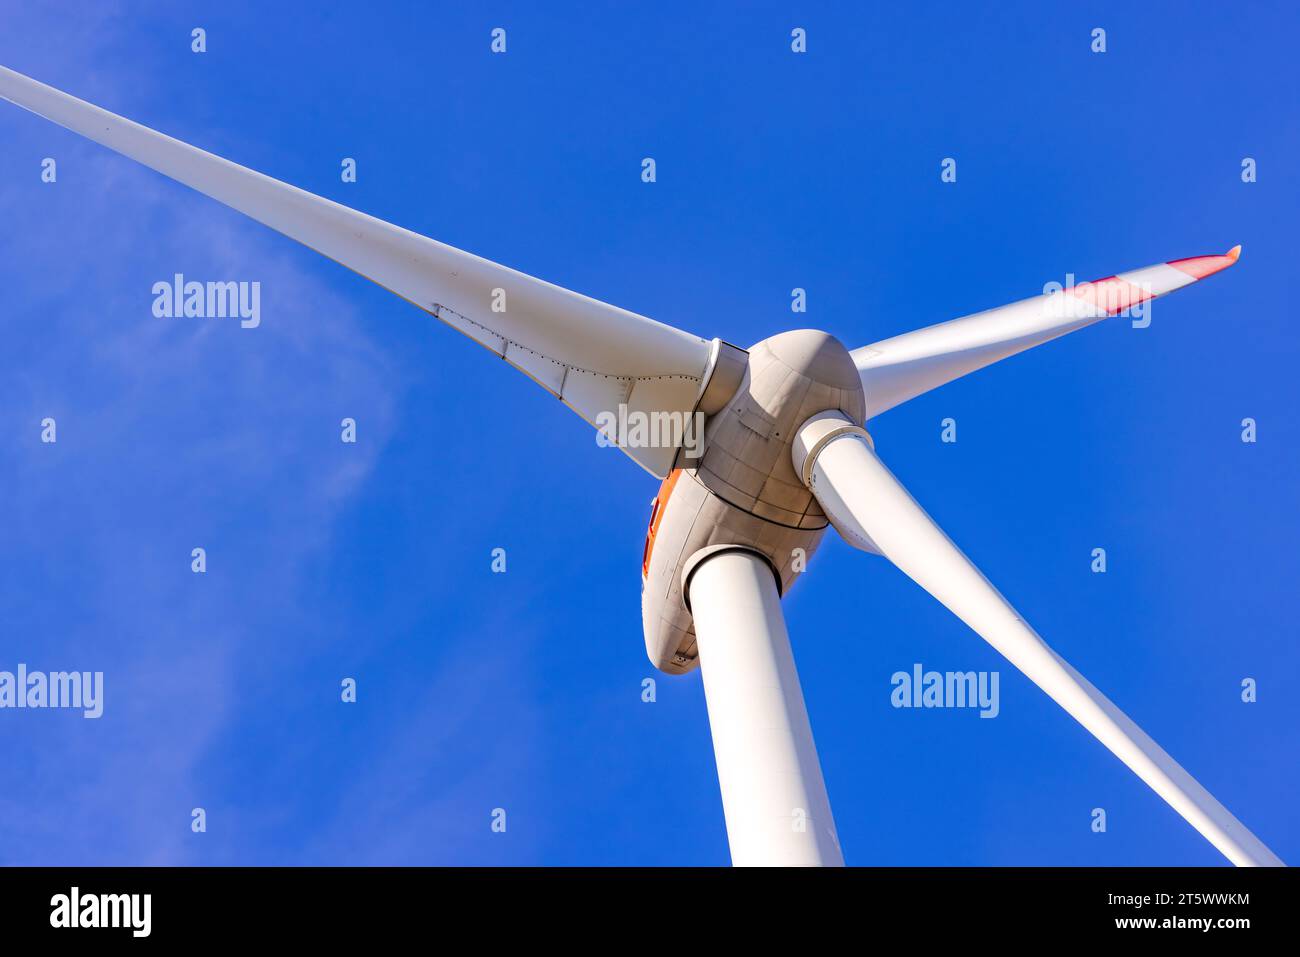 Detalles del rotor y las palas de una turbina de viento recortadas frente a un cielo azul Foto de stock